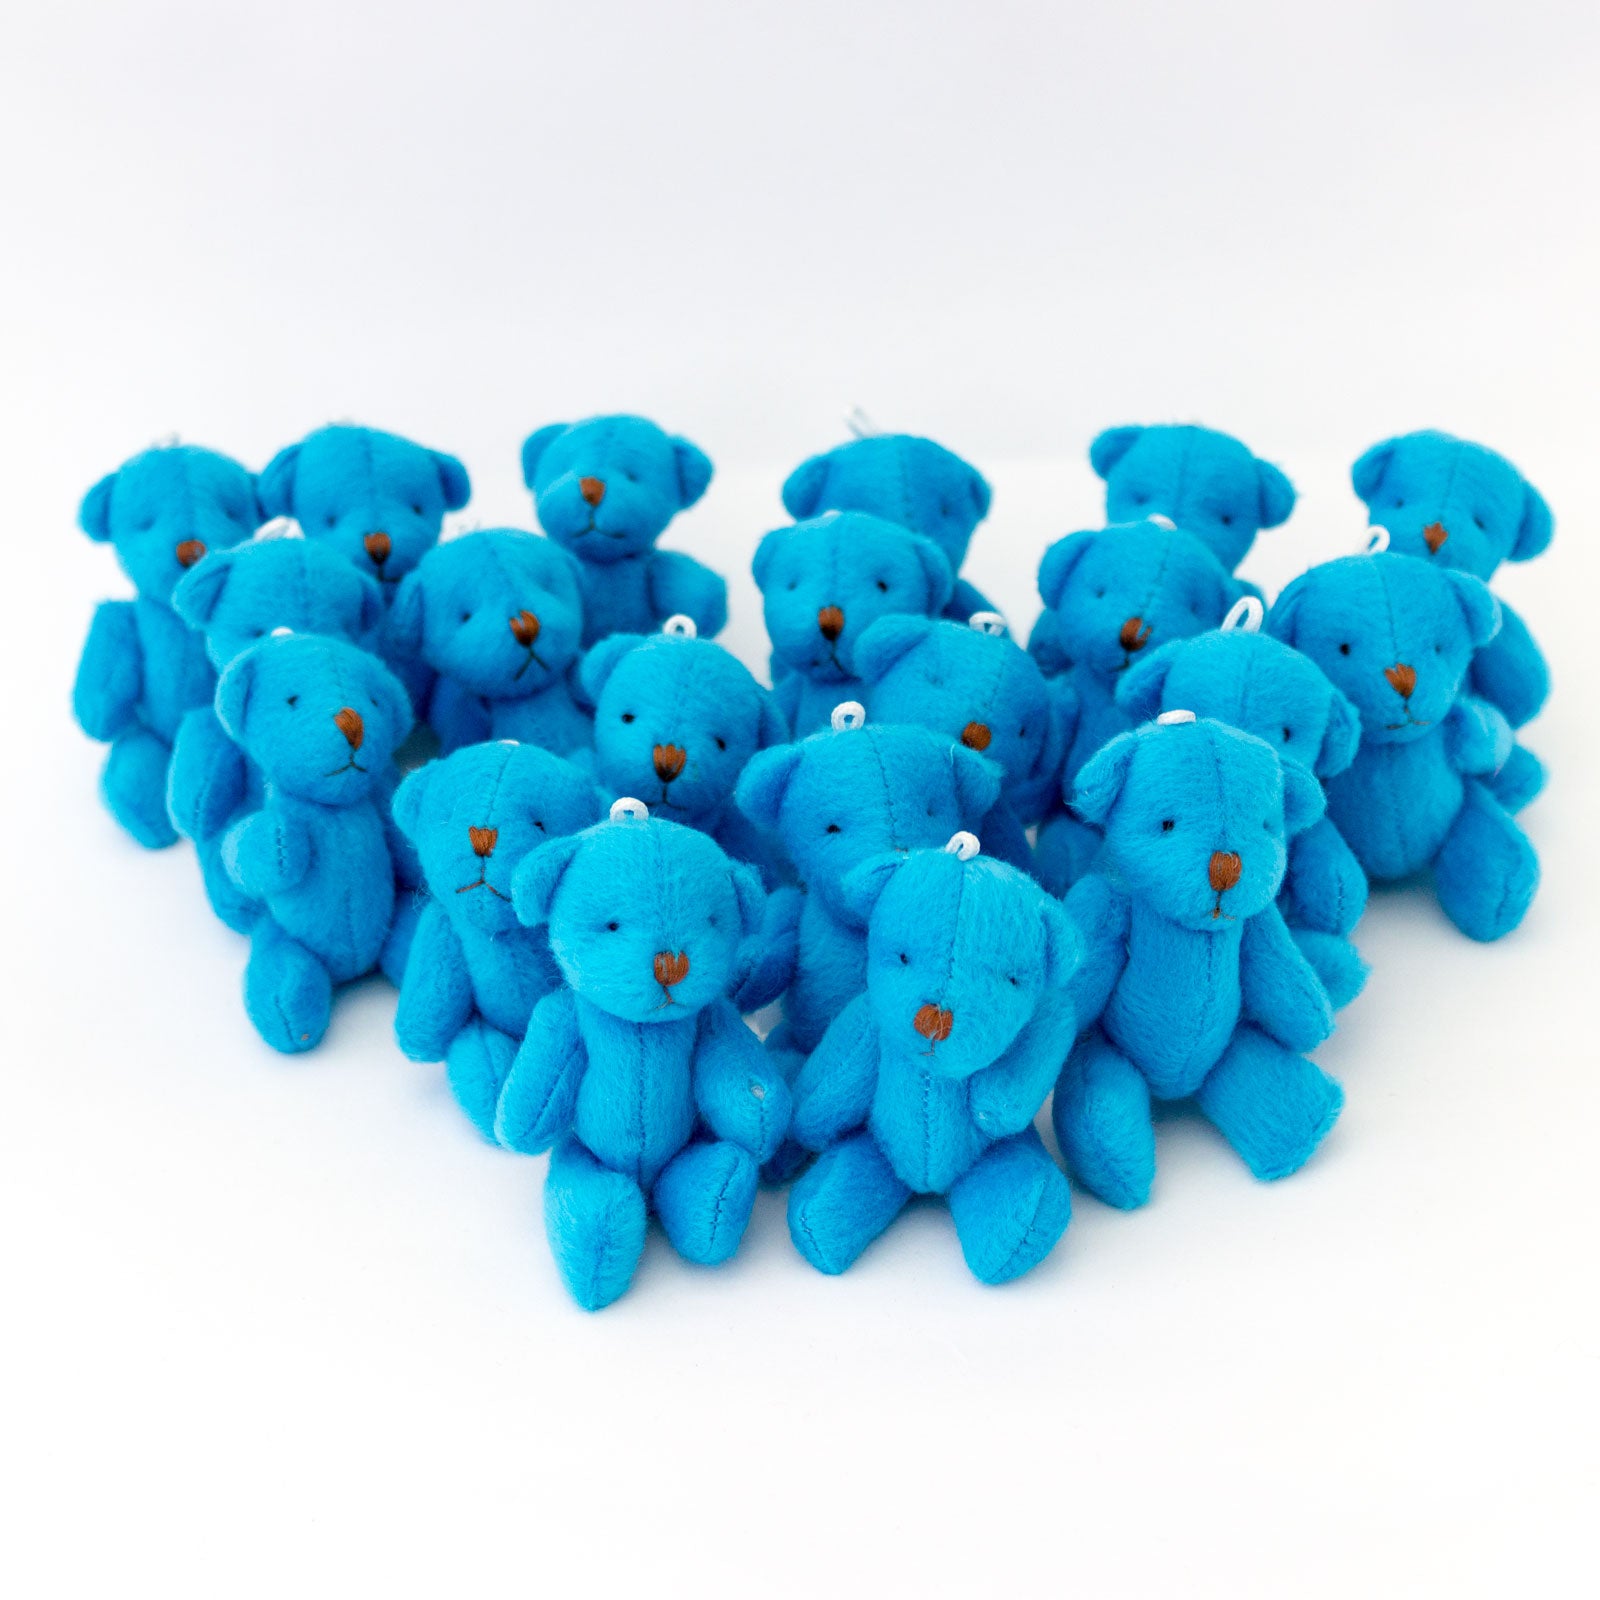 Small BLUE Teddy Bears X 20 - Cute Soft Adorable